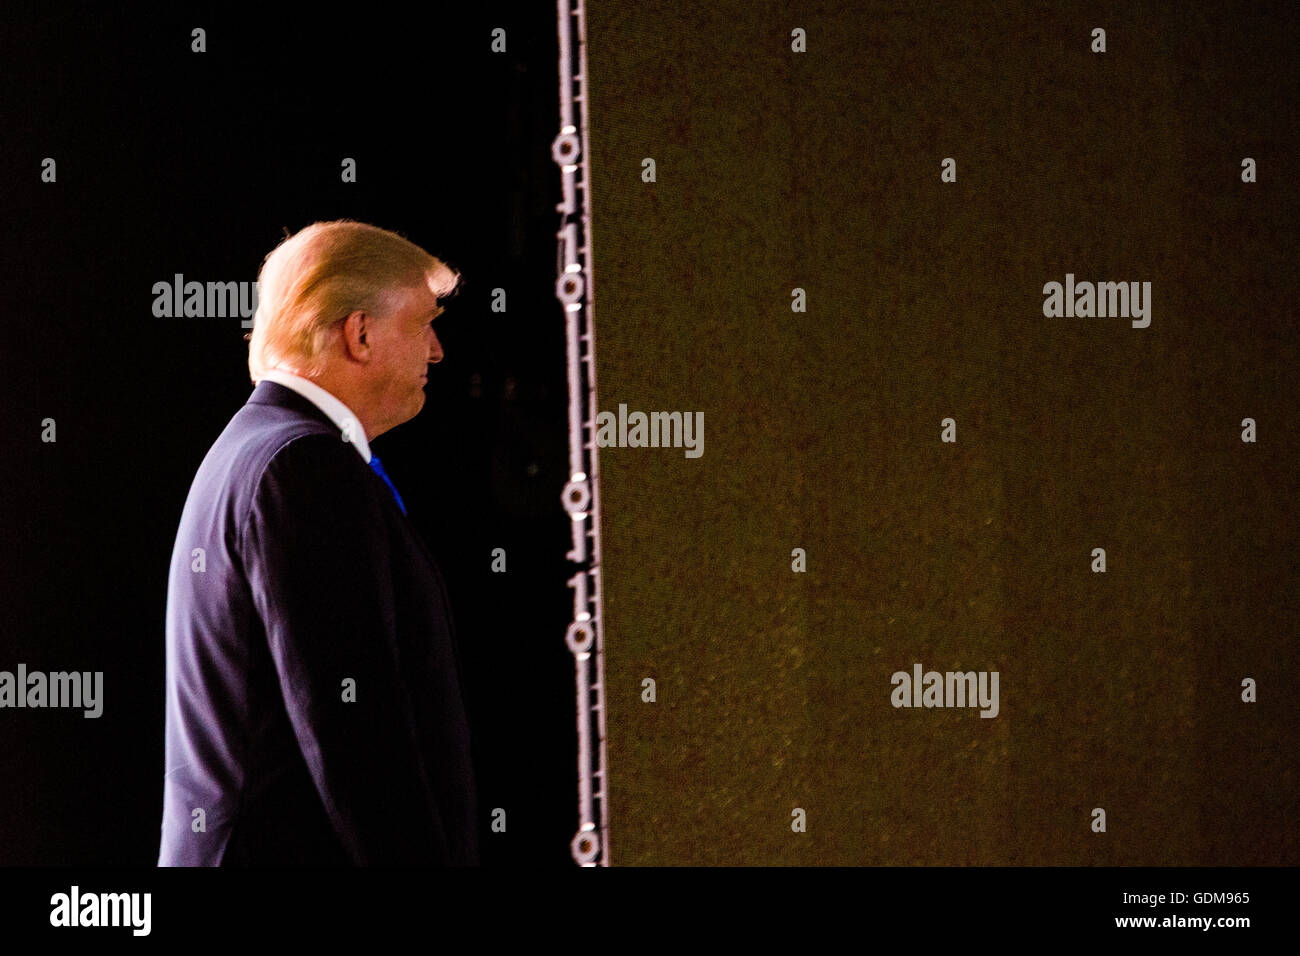 Cleveland, Ohio, USA. 18 juillet, 2016. Donald J. Trump fait son entrée. Première nuit à la Convention Nationale Républicaine. Crédit : Philip Scalia/Alamy Live News Banque D'Images